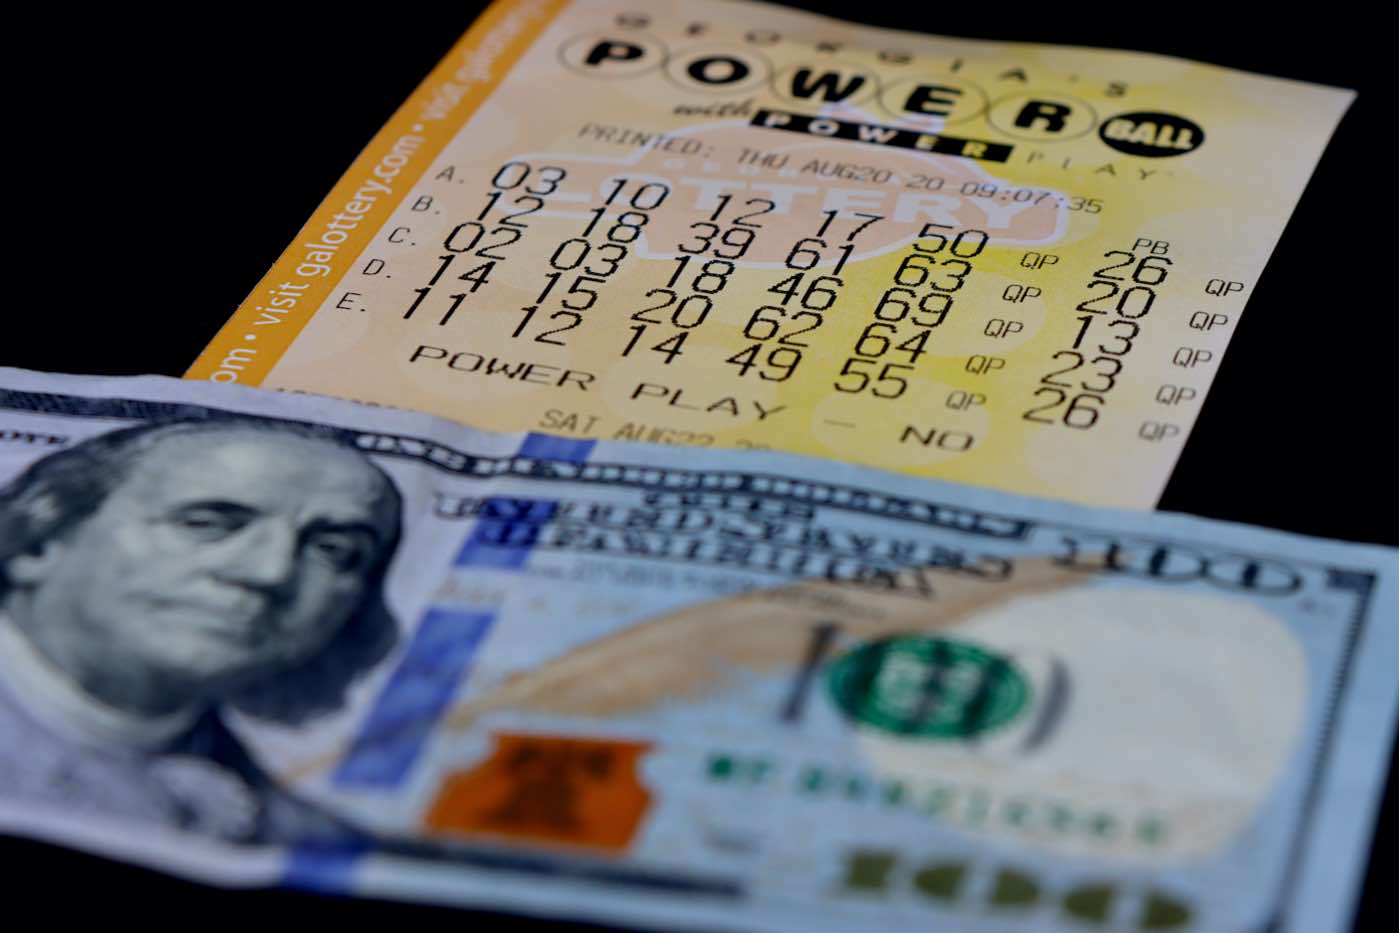 Un solo boleto gana el premio mayor del Powerball de $473,1 millones -- Que hacer primero si eres el ganador